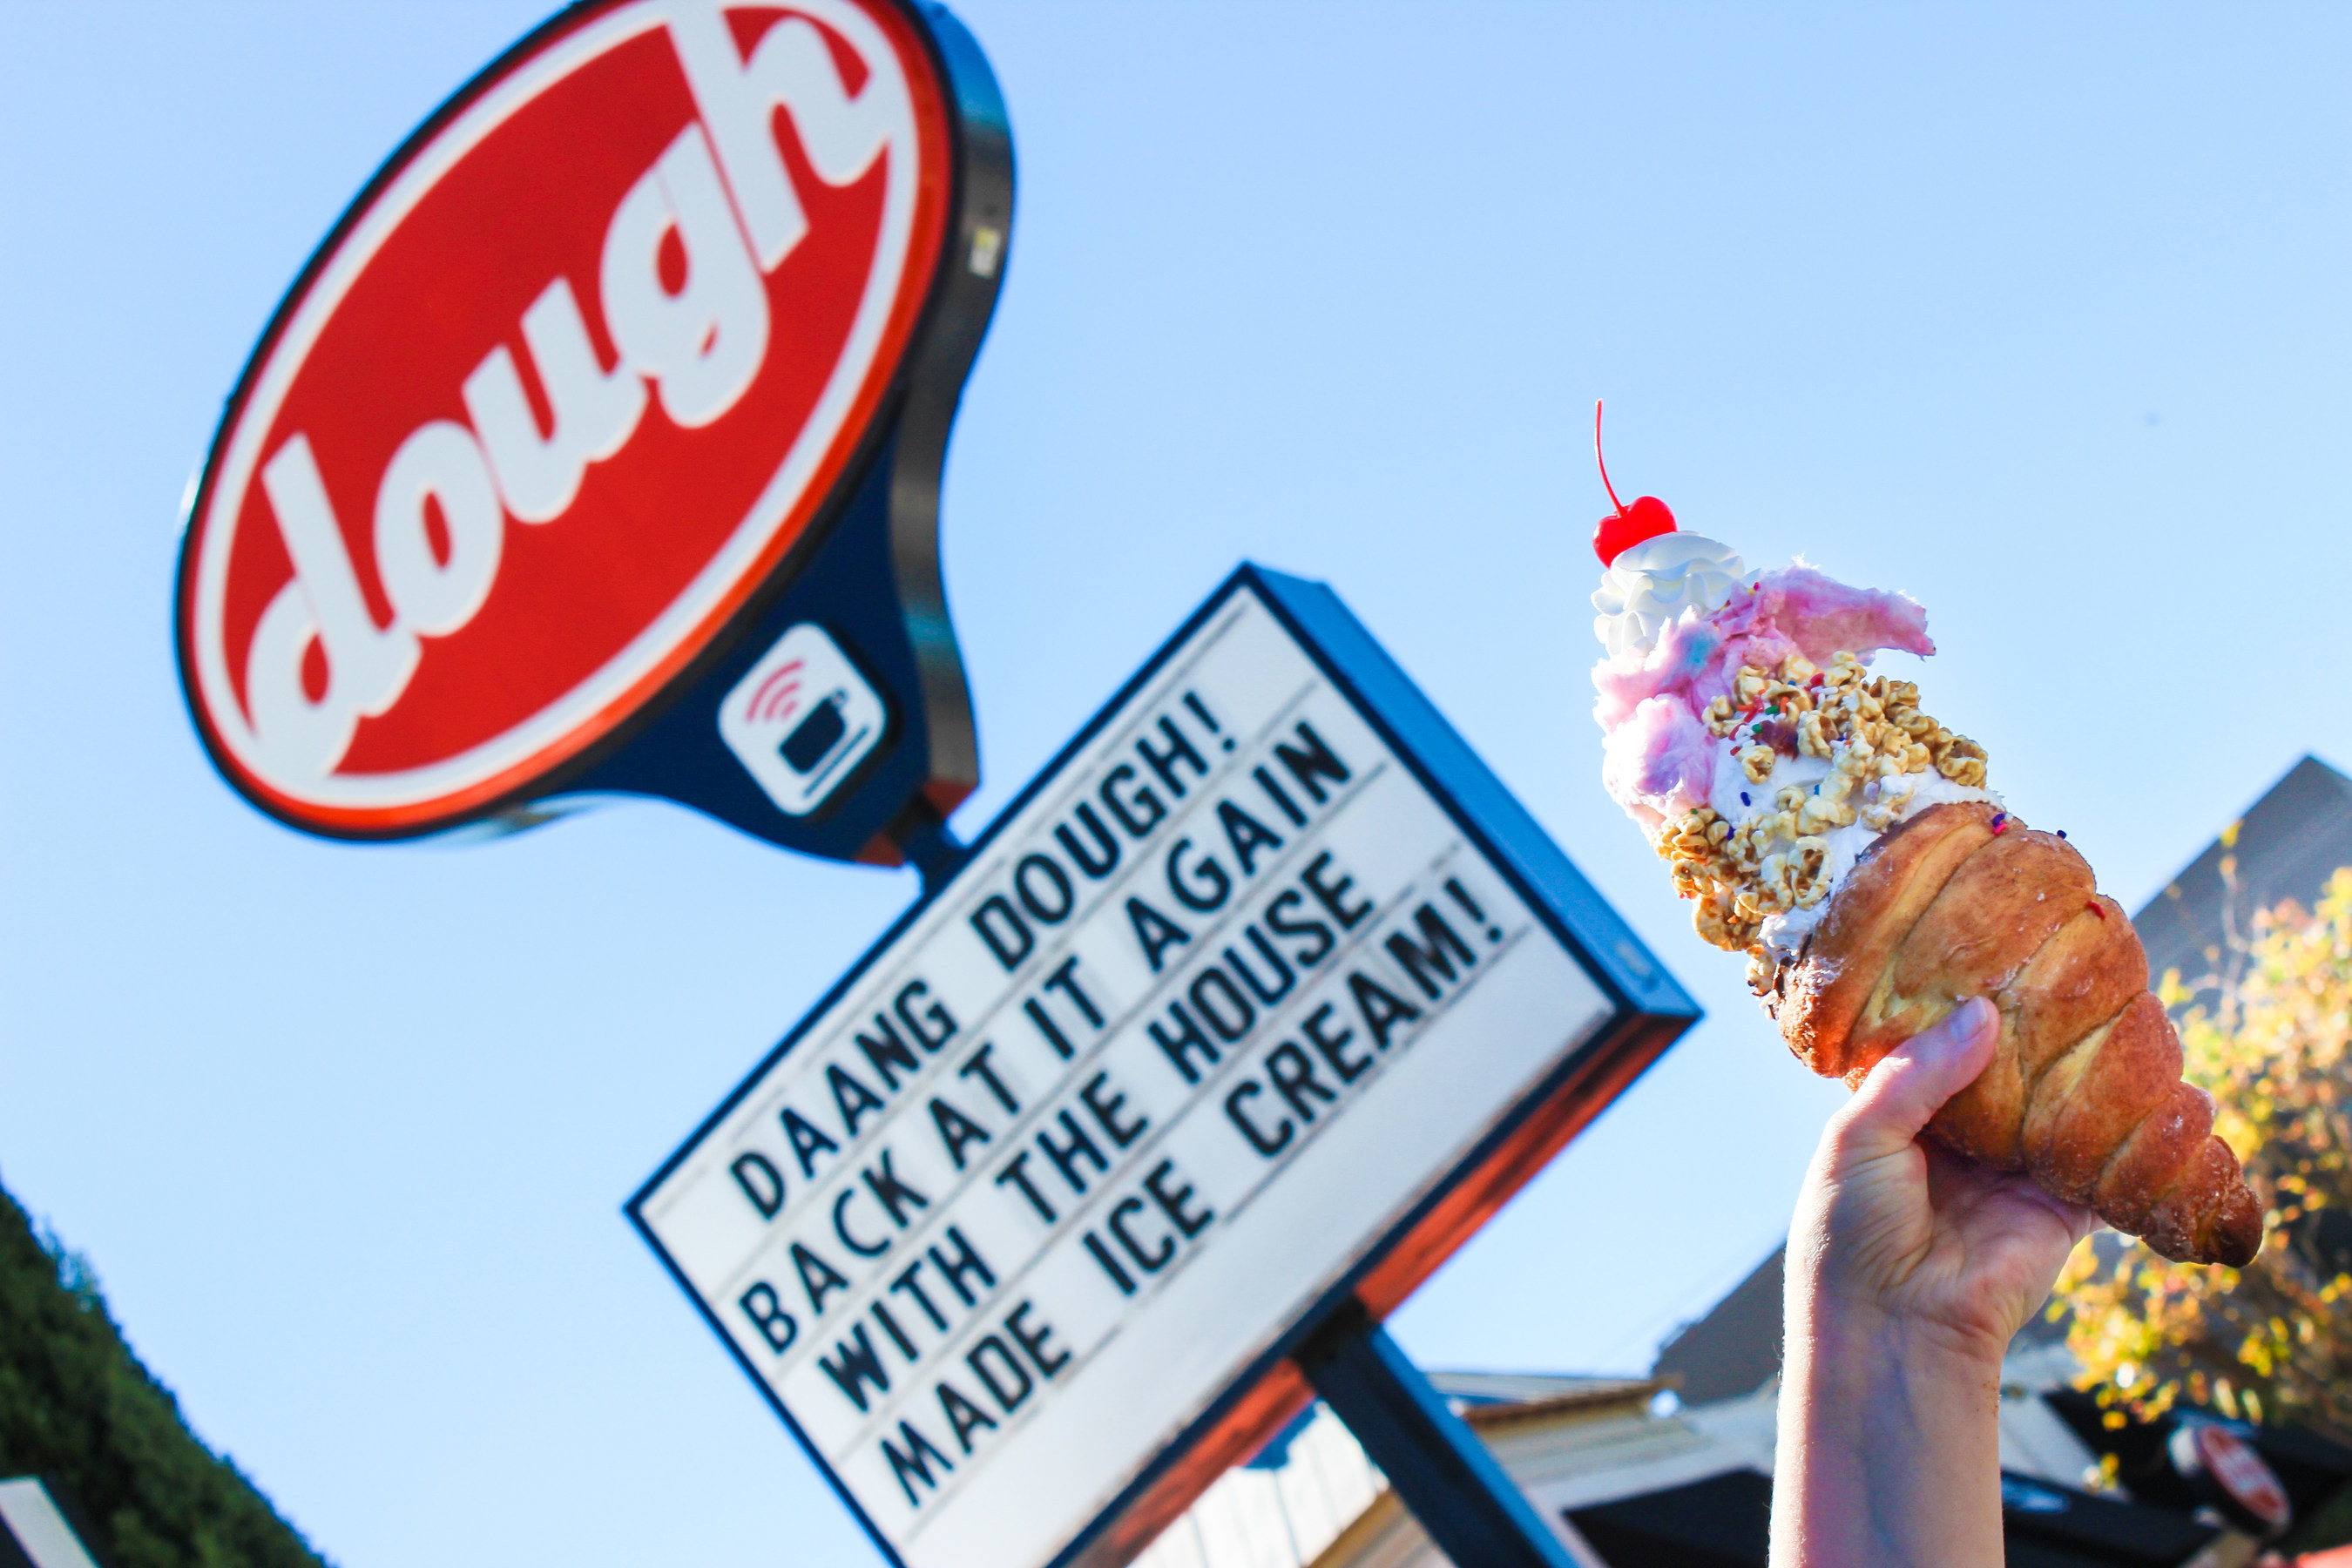 CZECH MATE! Doughnut Ice Cream Cones Find A Permanent Home in Tampa!